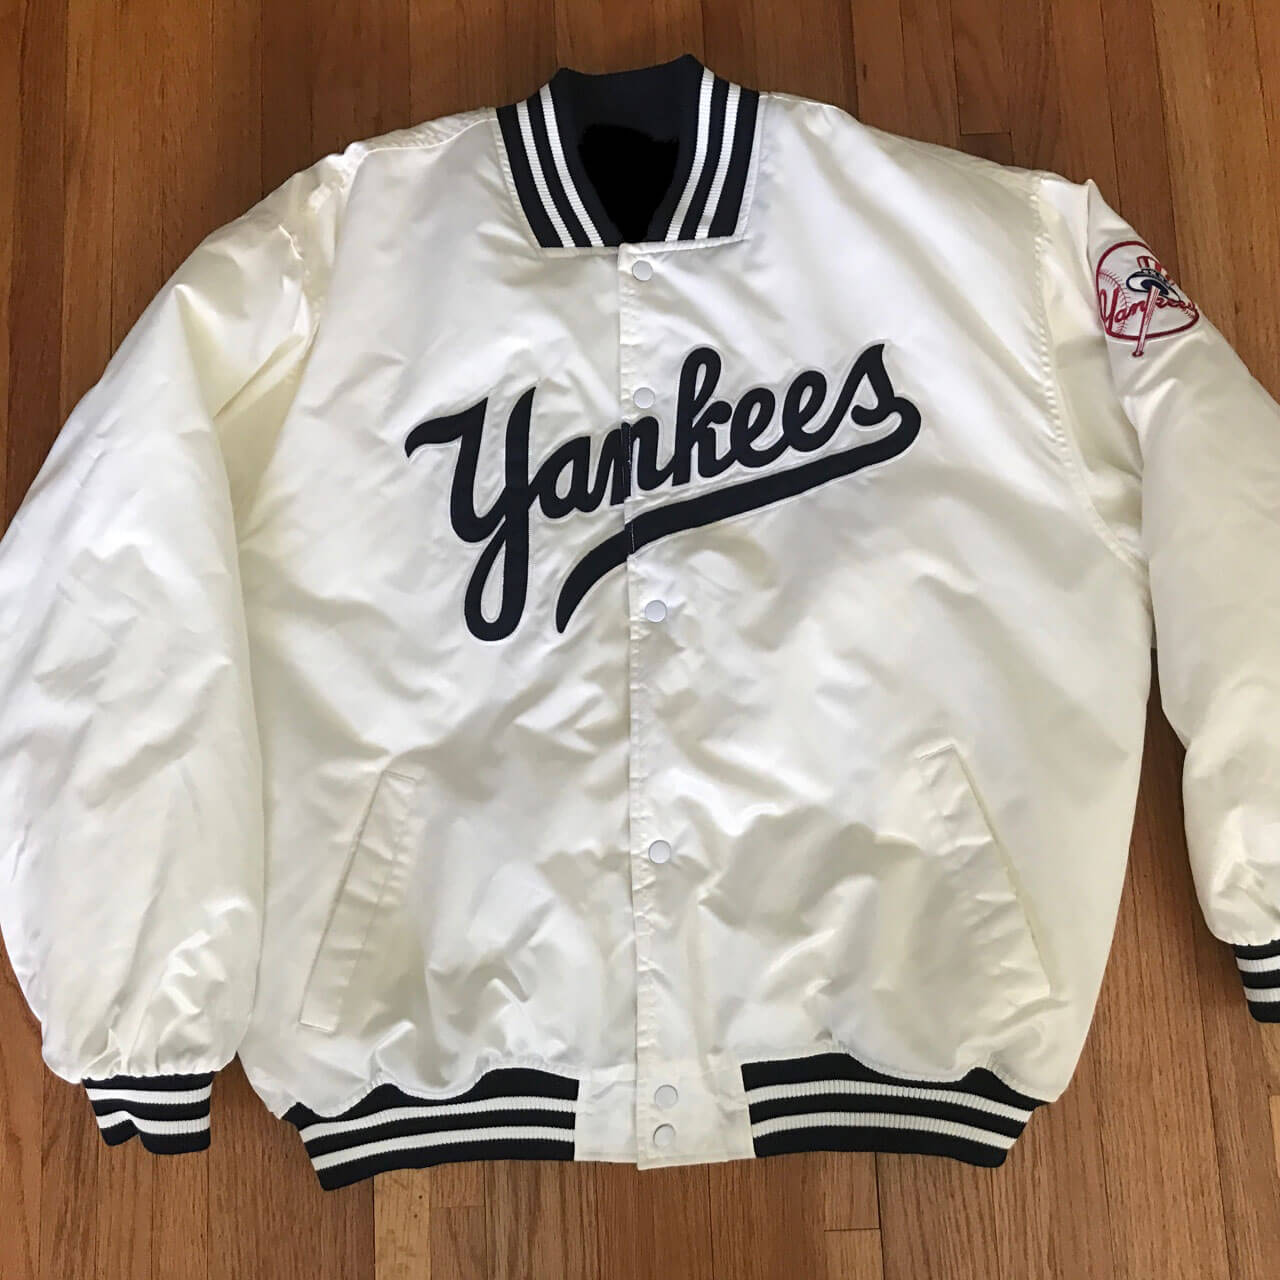 Vintage New York Yankees Sweatshirt (1990s)  Sweatshirts, Vintage new  york, New york yankees